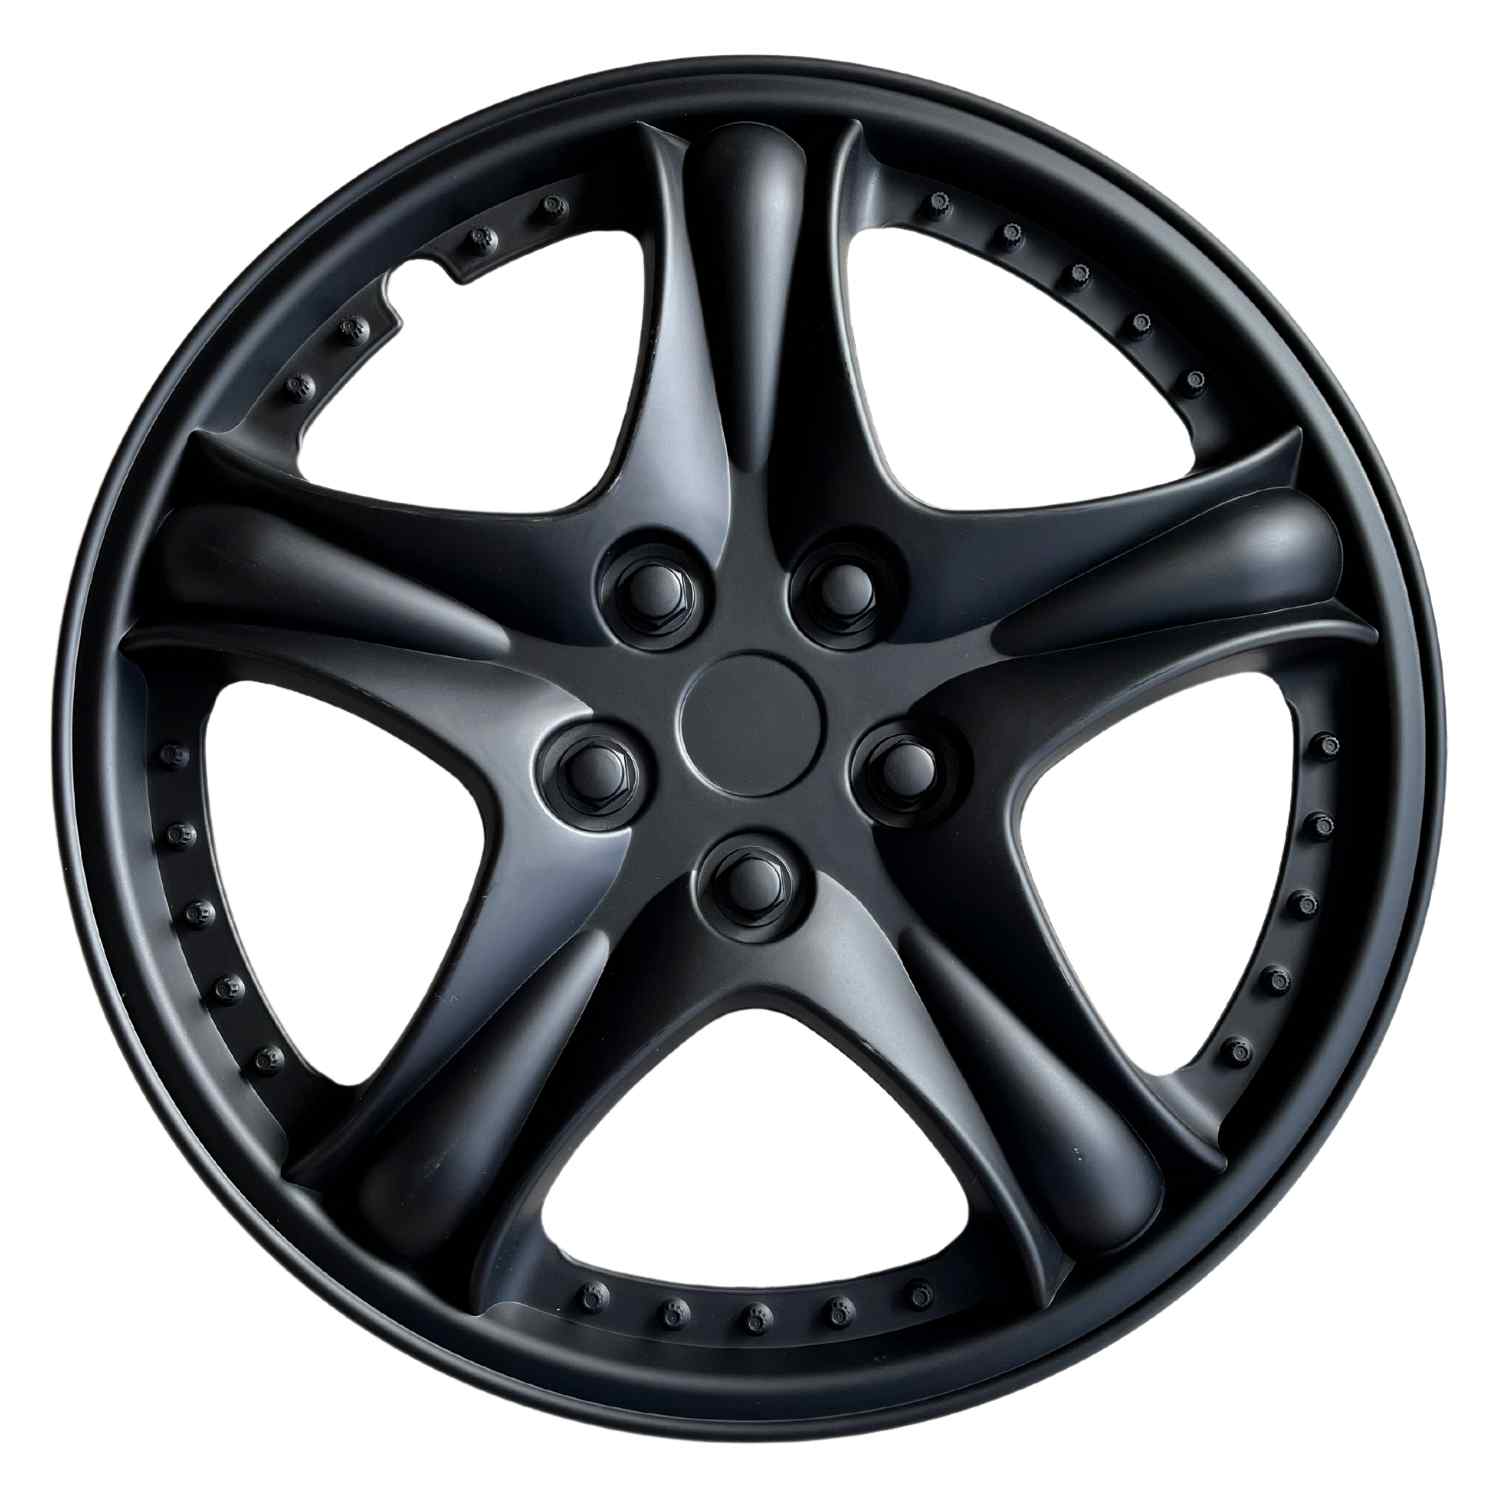 MHUI Tapacubos para ruedas de coche, 13/14/15 pulgadas (blanco negro) para  decoración de rueda de coche, adecuado para piezas de modificación de